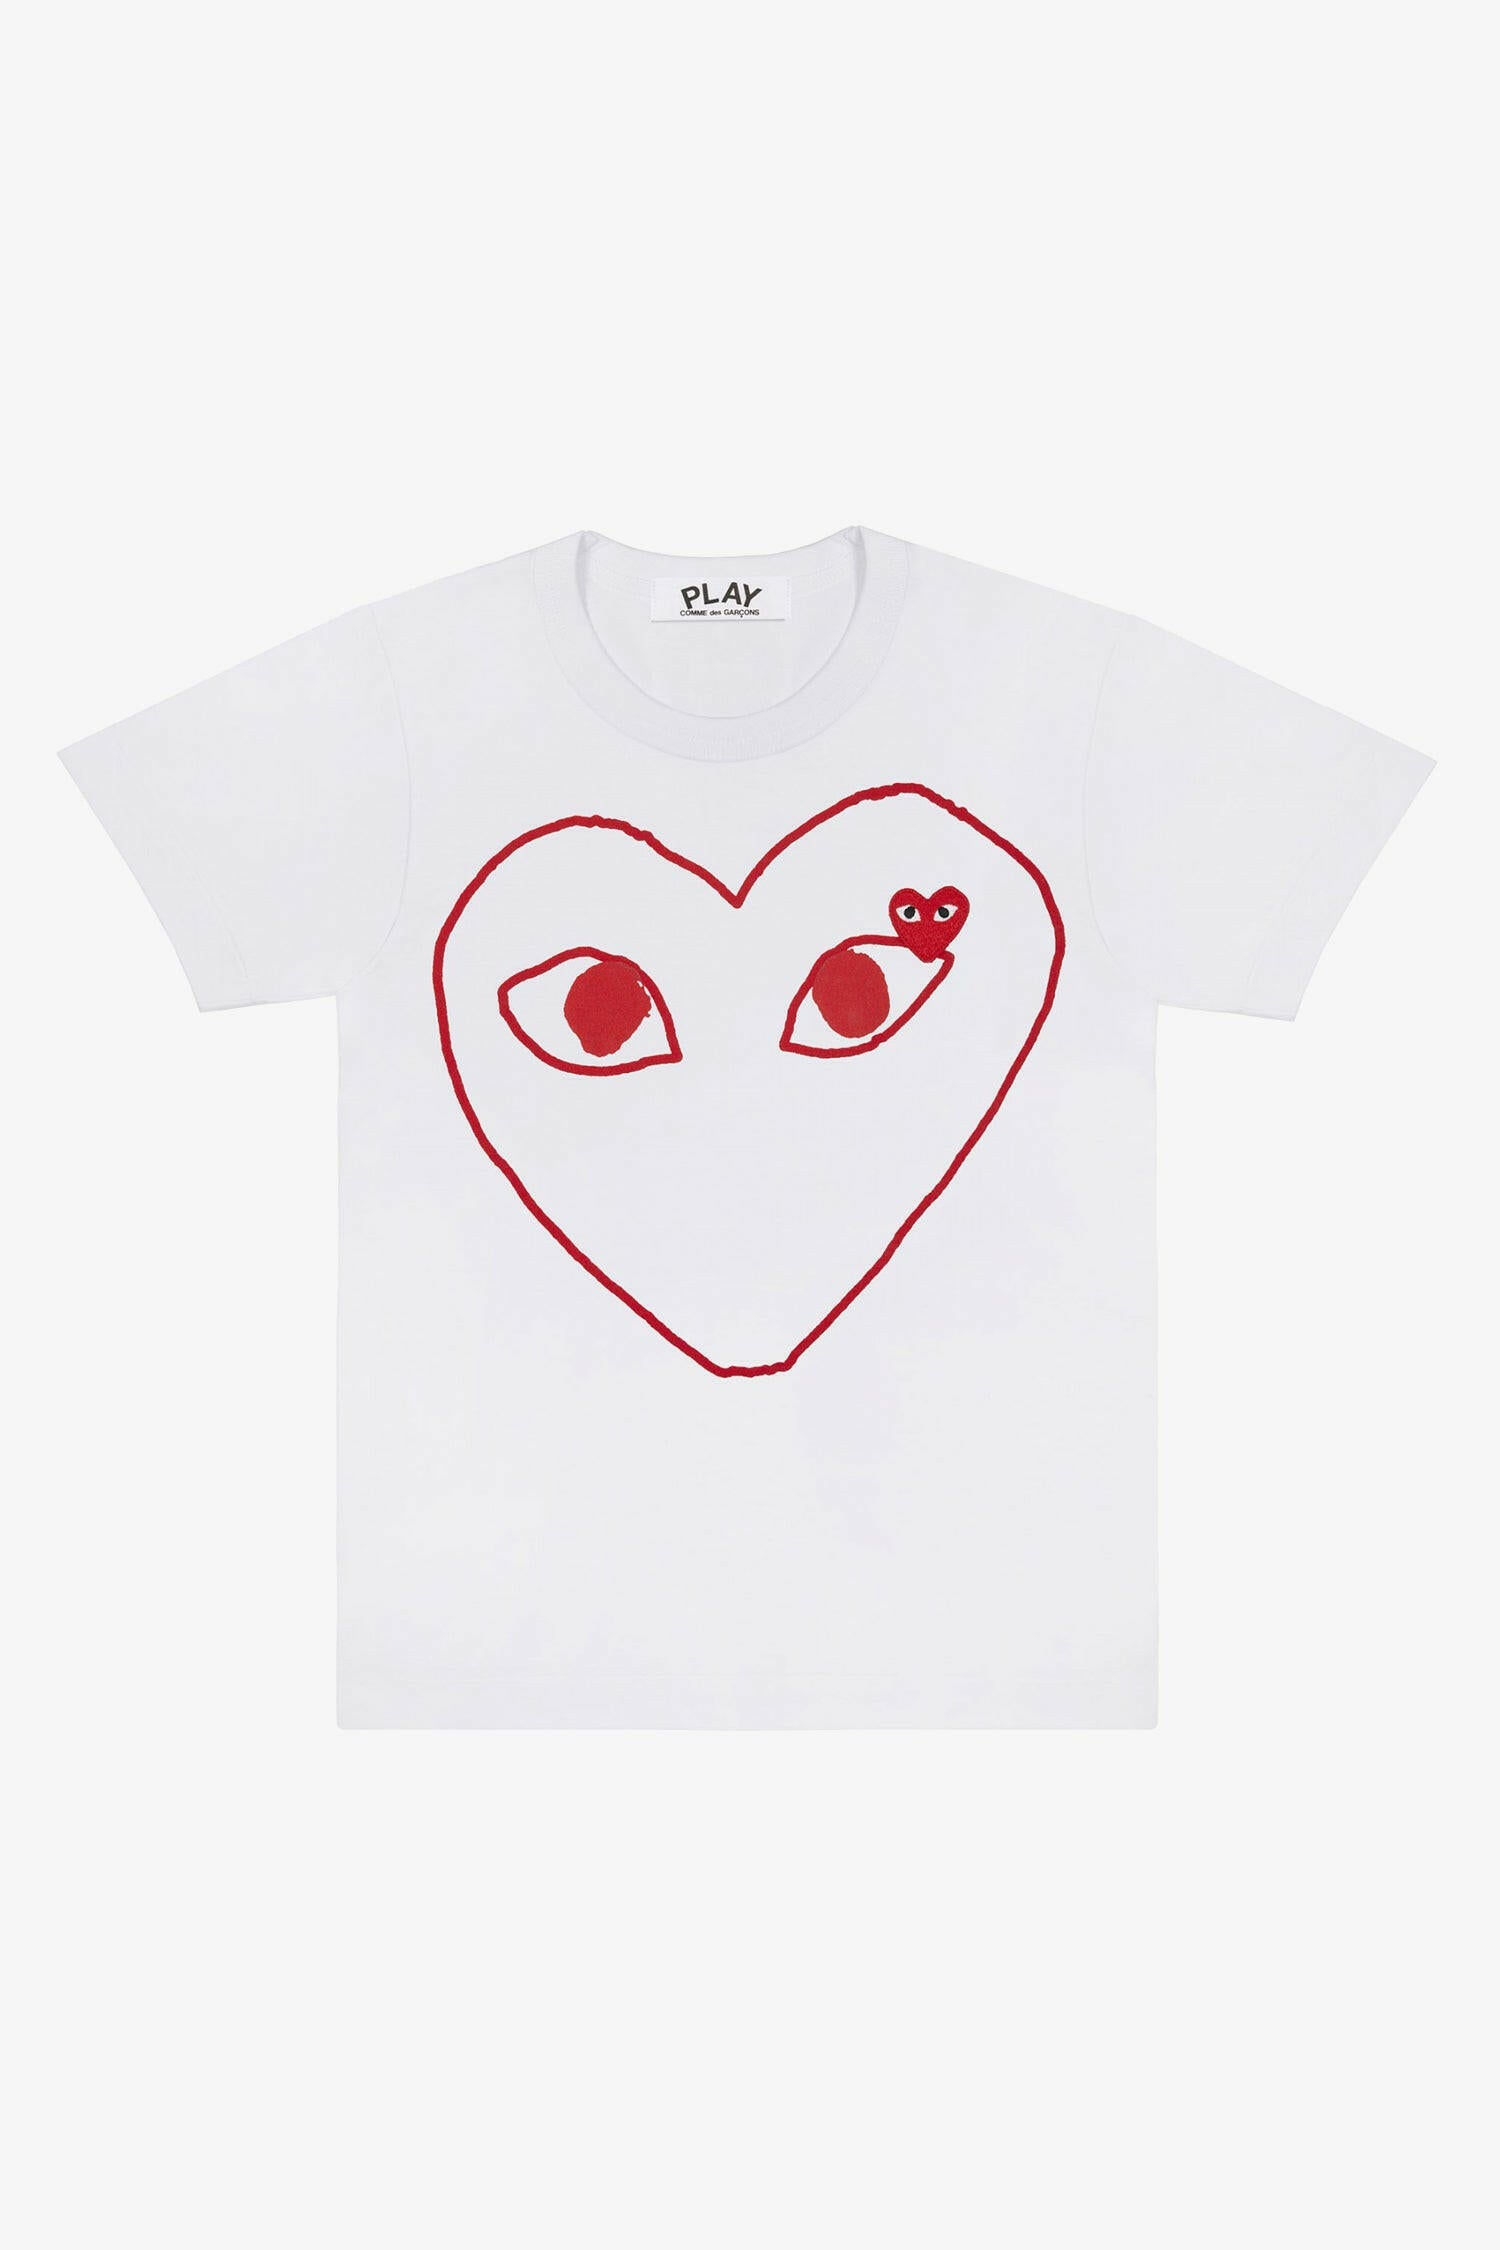 Selectshop FRAME - COMME DES GARCONS PLAY Empty Big Red Heart T-Shirt T-Shirt Dubai